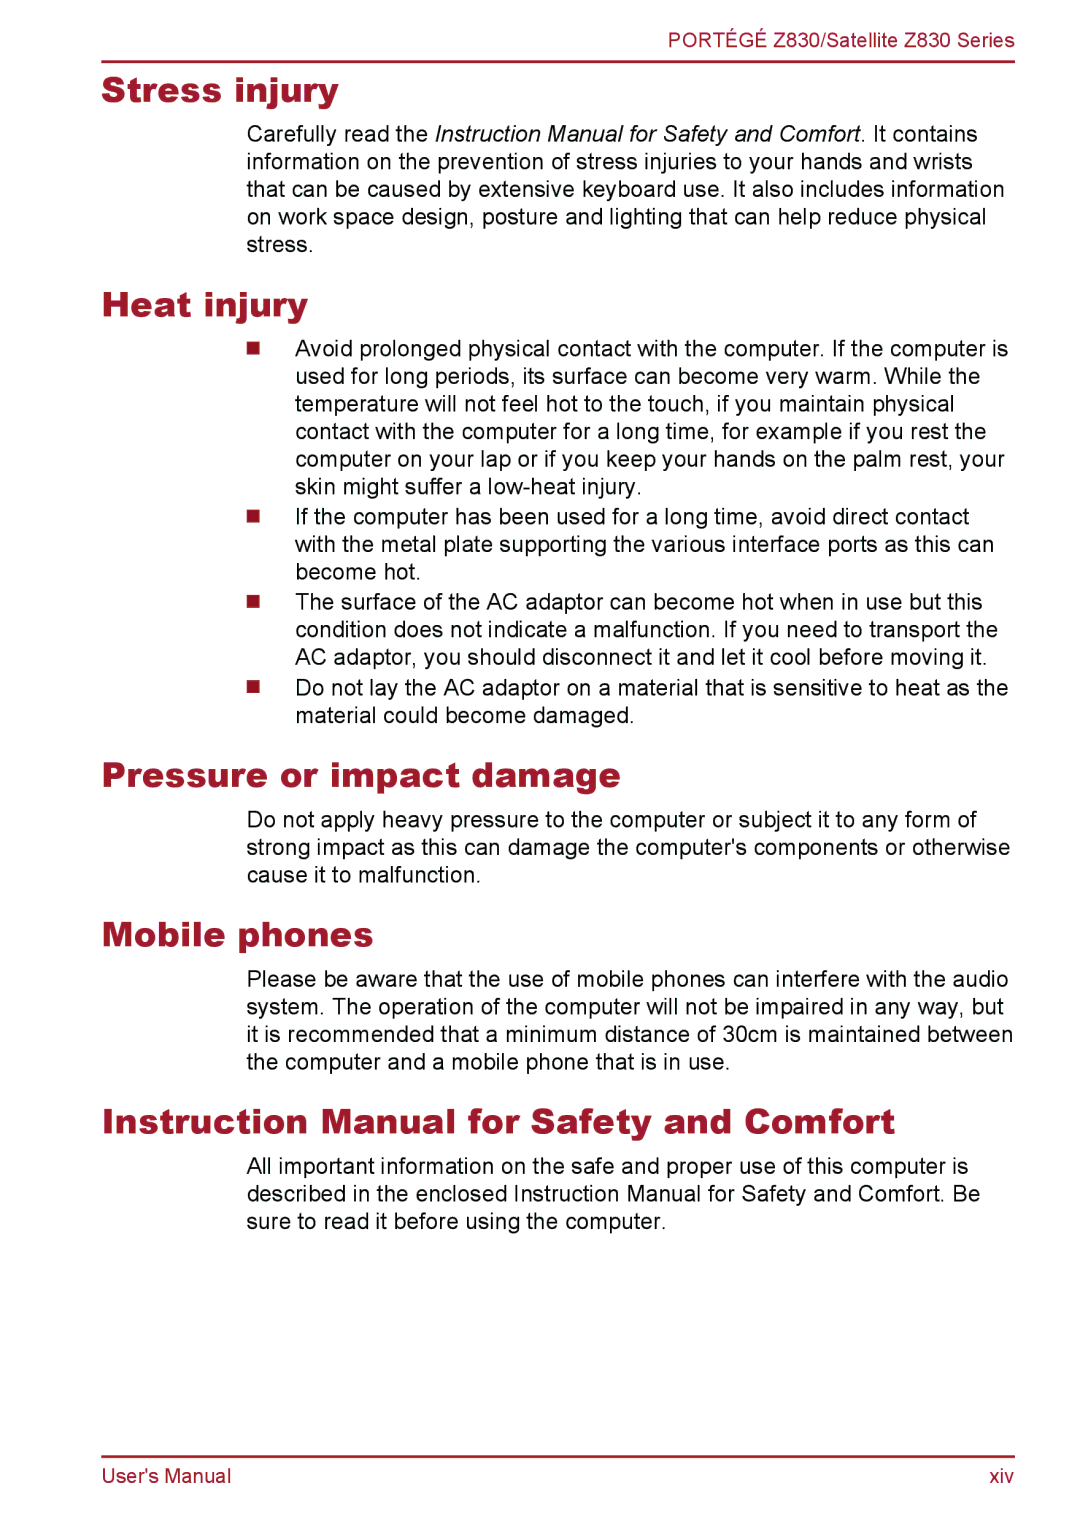 Toshiba Z830 user manual Stress injury Heat injury, Pressure or impact damage, Mobile phones 